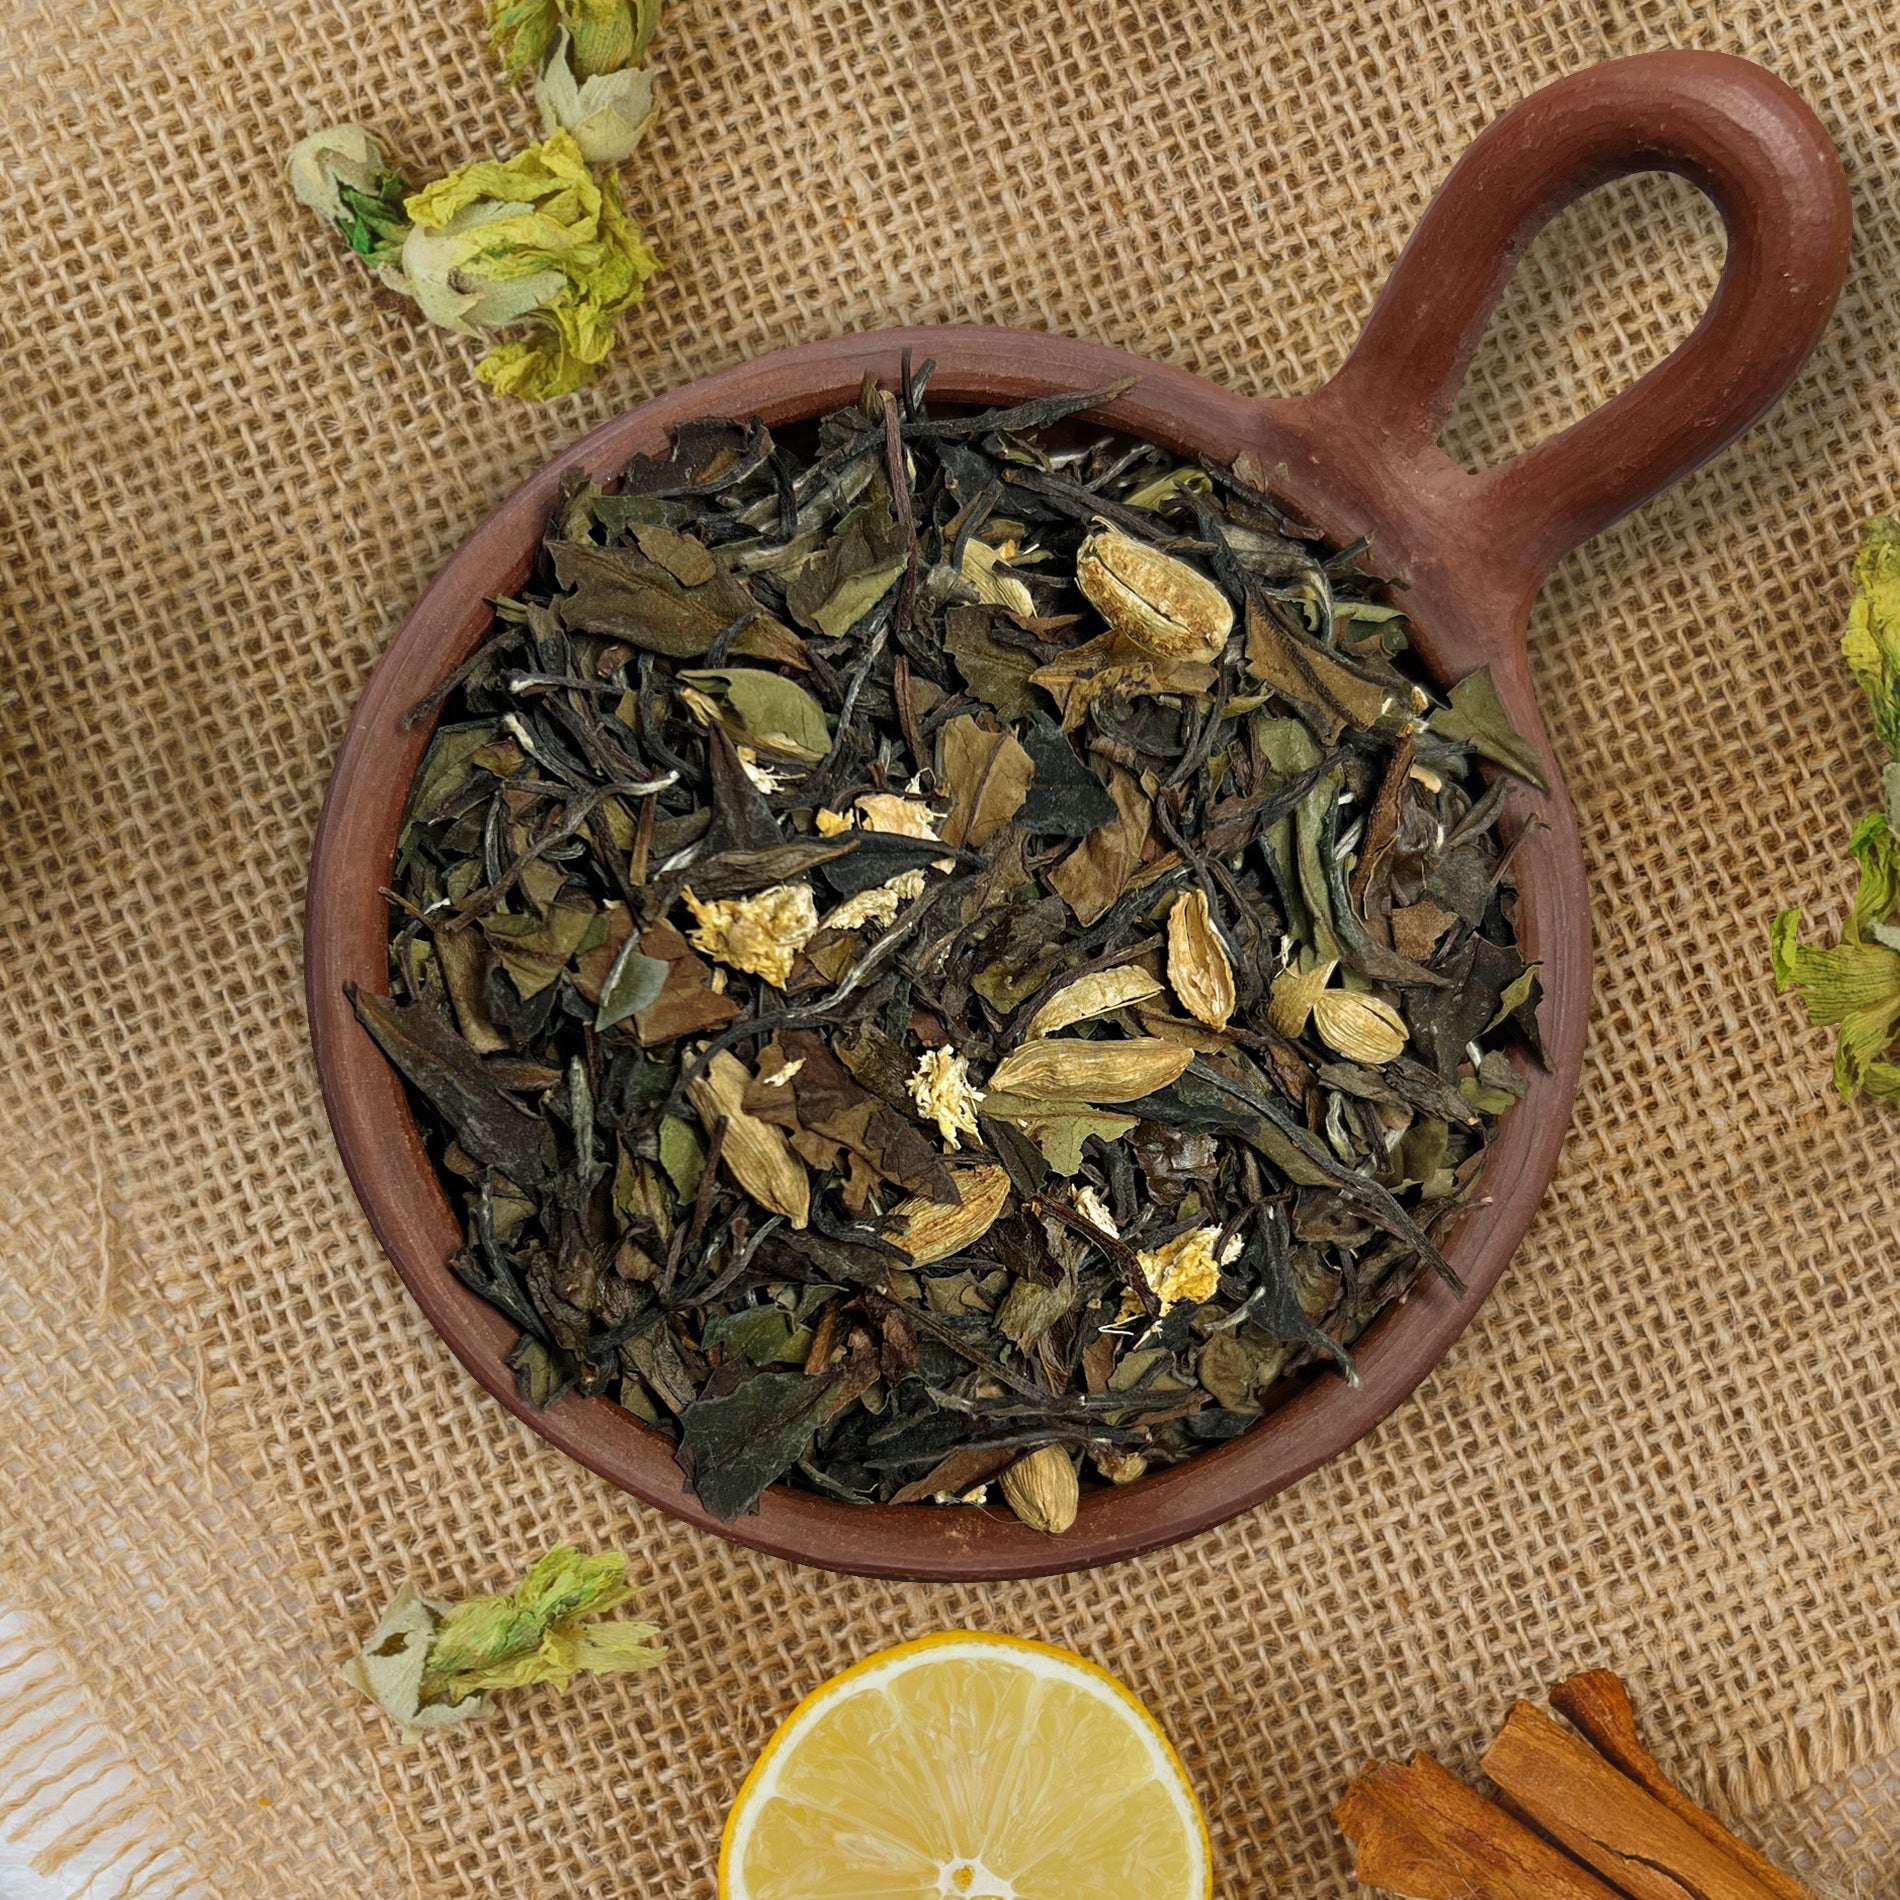 Mezcla de té Chai Blanco, está compuesto de té blanco, jengibre, clavo de olor, anís estrella, cardamomo y pimienta negra.